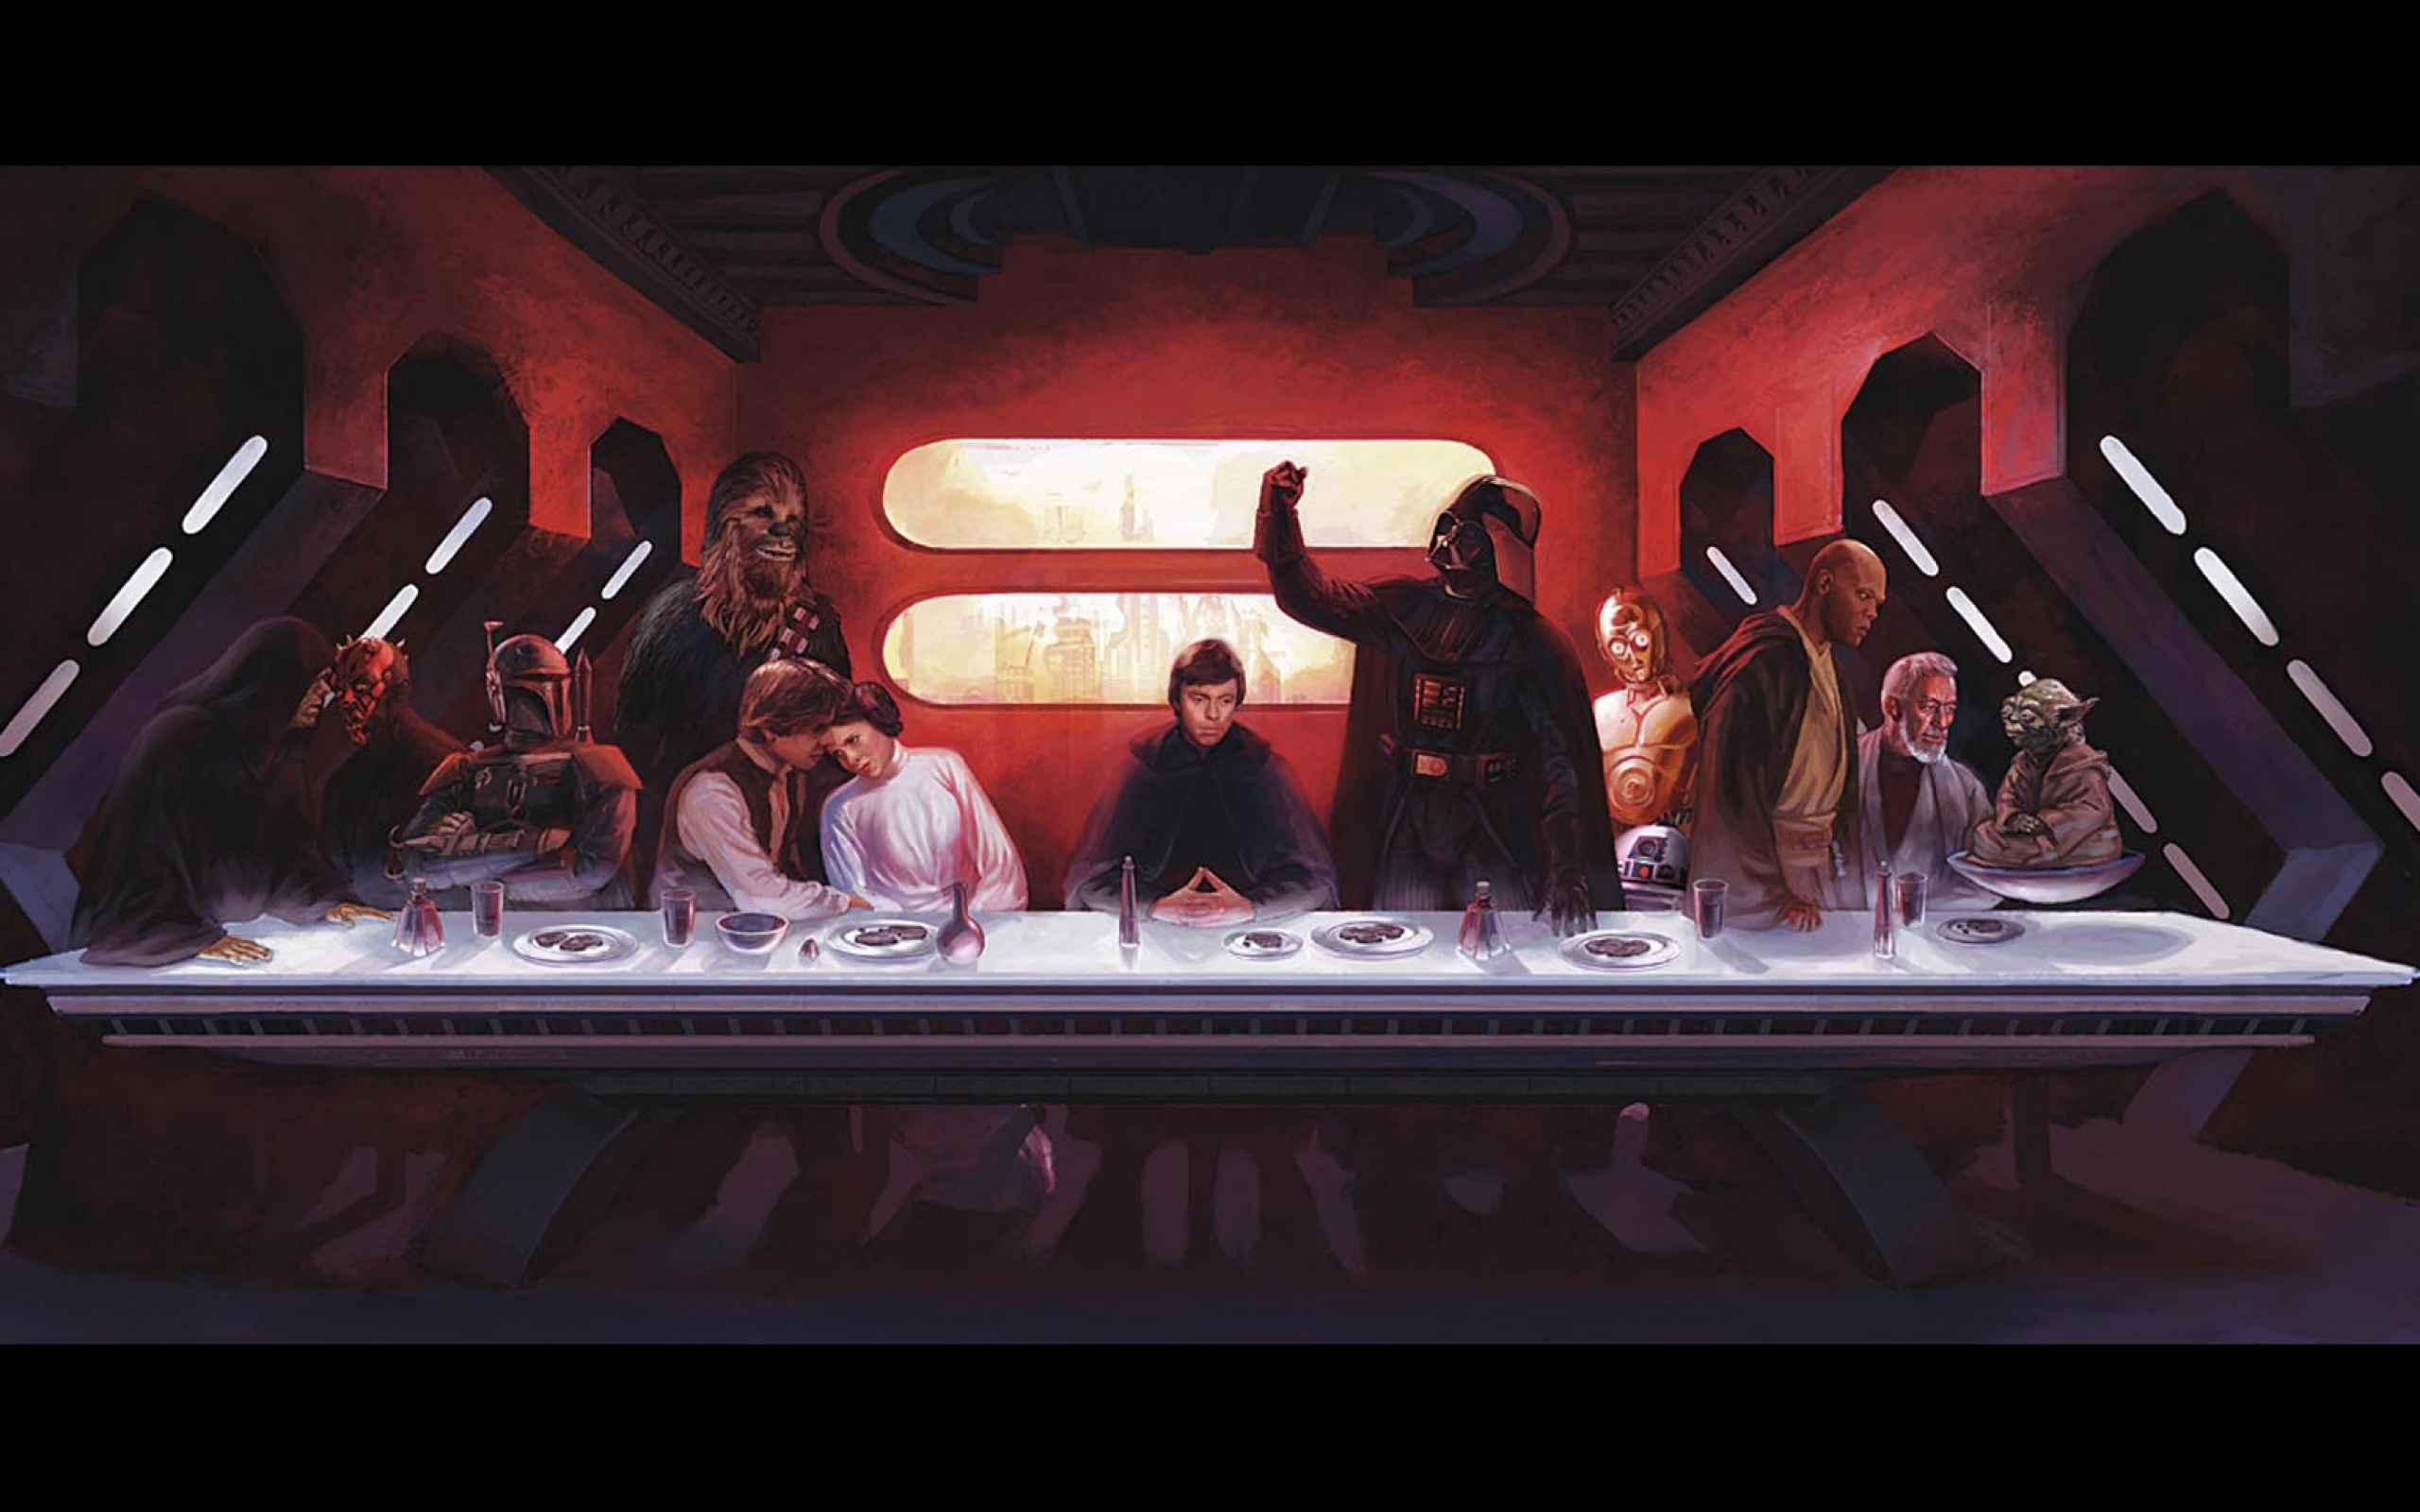 Wallpaper Star Wars C3po Darth Vader Last Supper